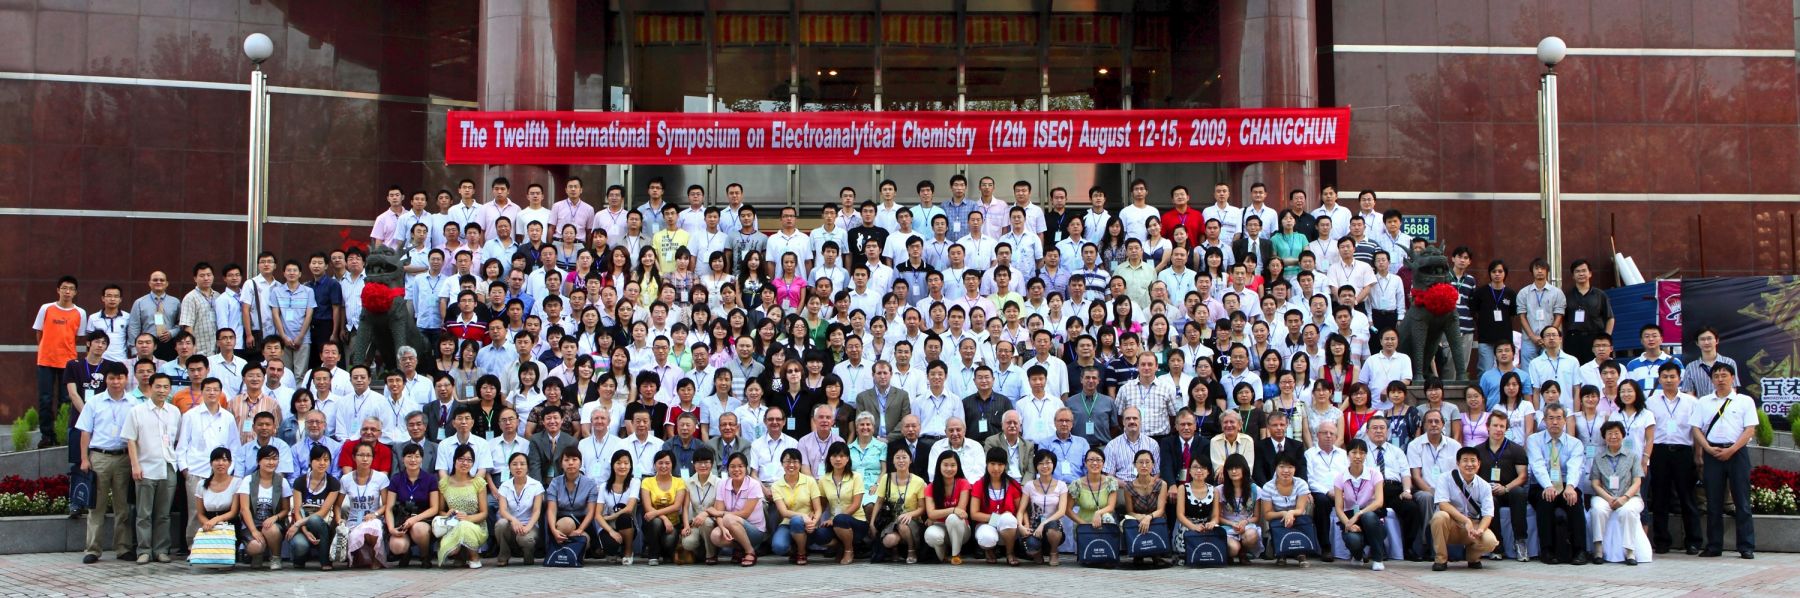 2009年-8月13日-第12届国际电分析化学研讨会-关锋